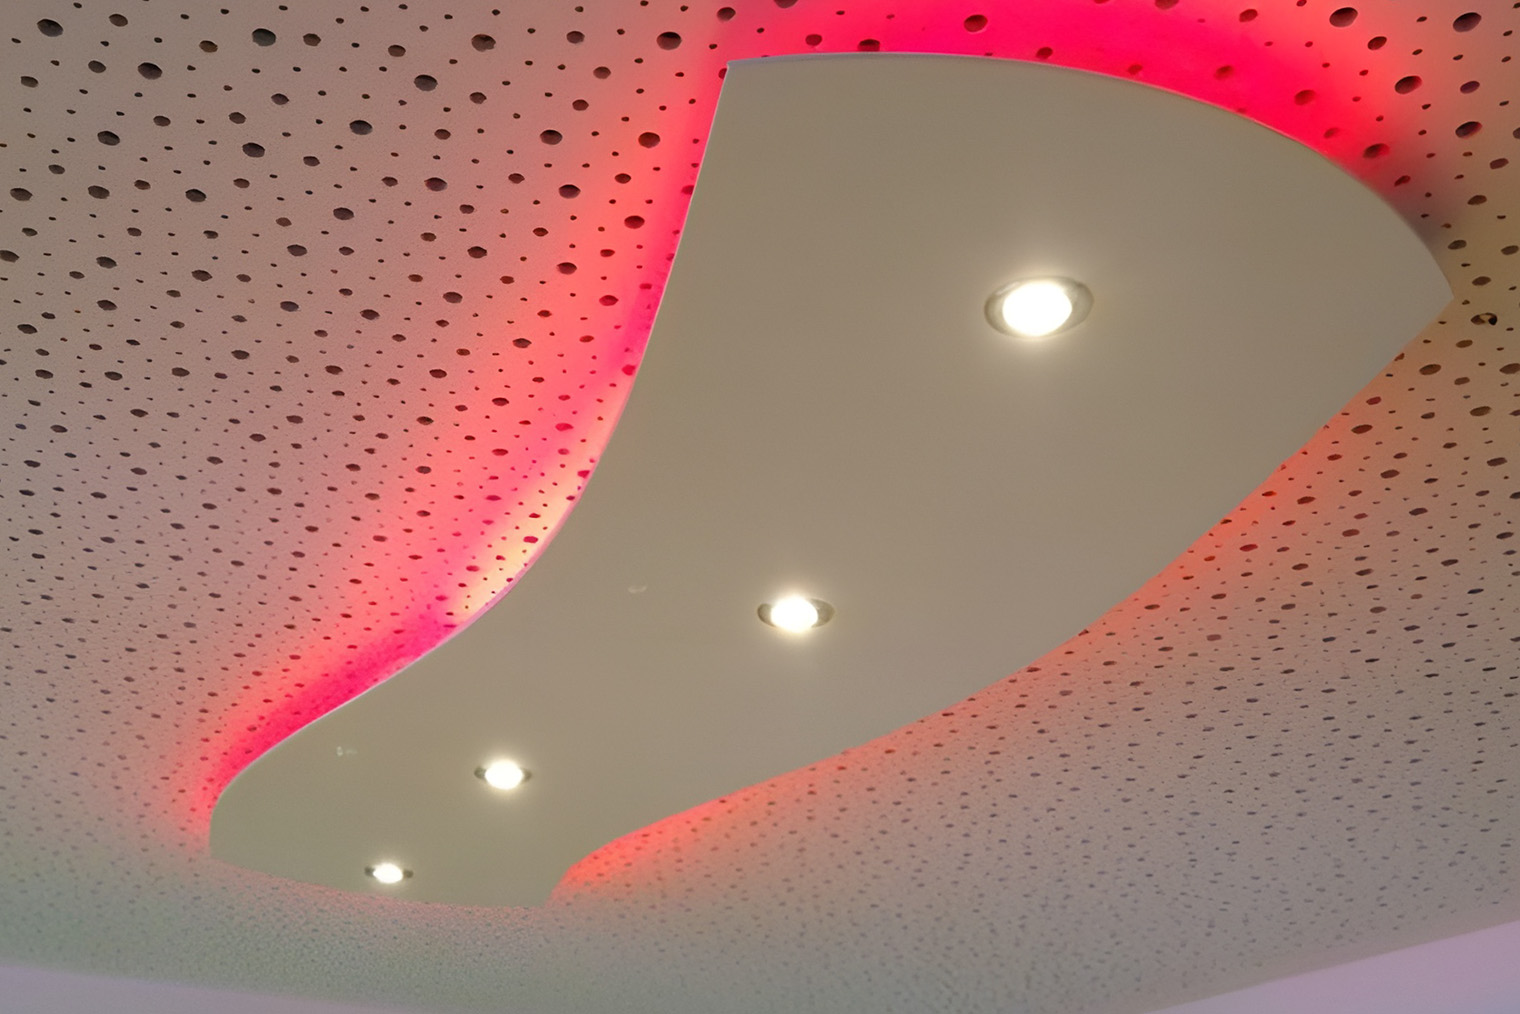 Многоуровневый потолок: резное полотно и комбинированное освещение на «острове». Фотография: Nano TX / Pinterest